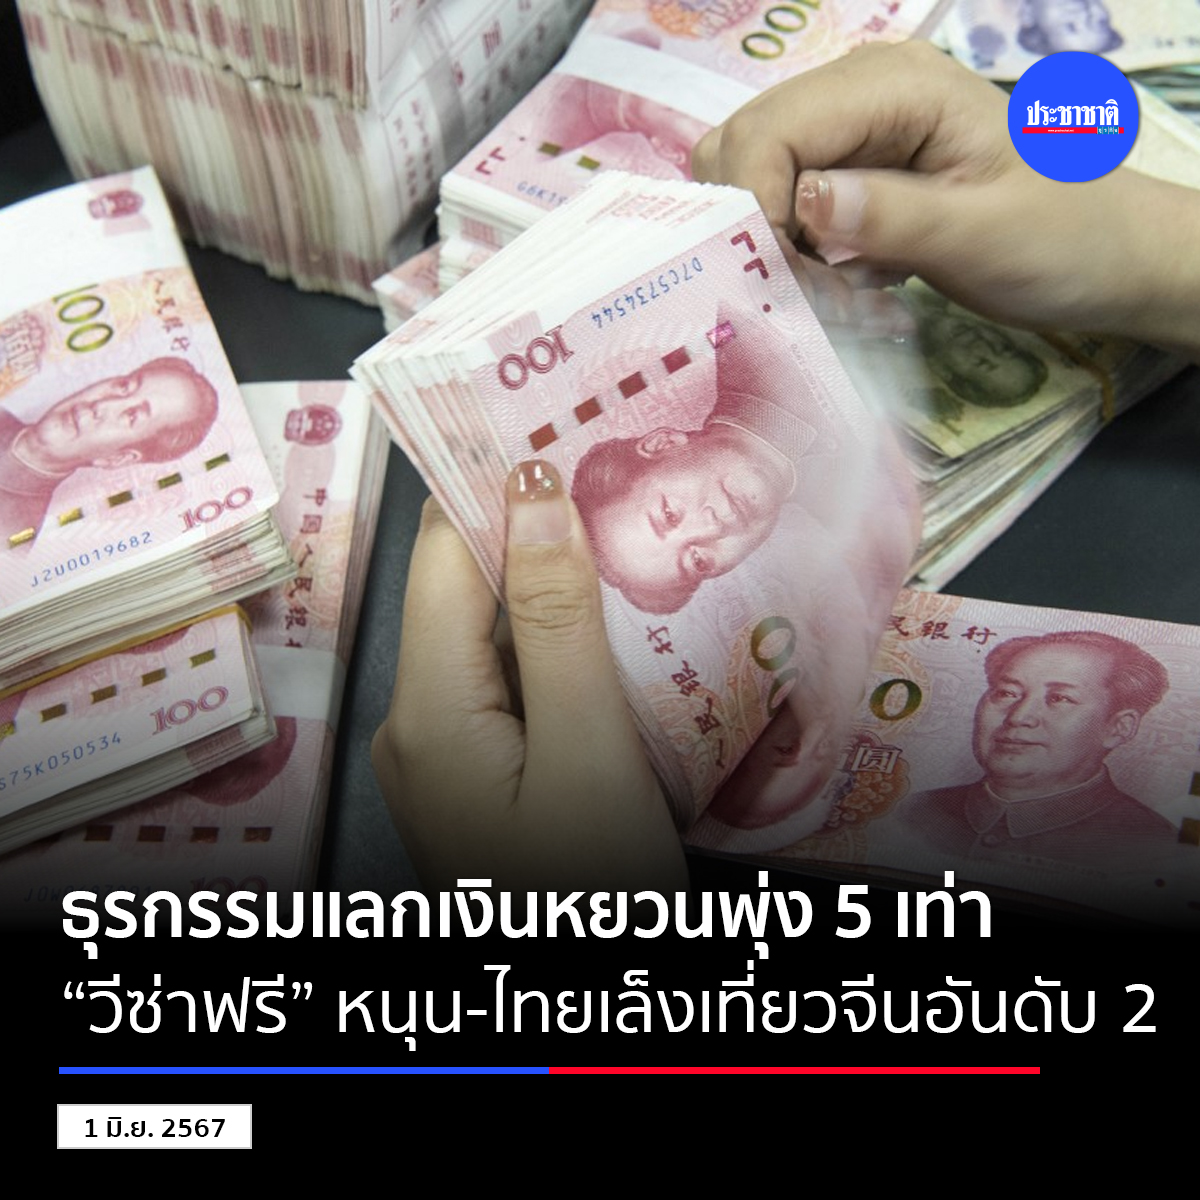 人民币兑换激增5倍 免签助力中国成泰国第二大旅游目的地